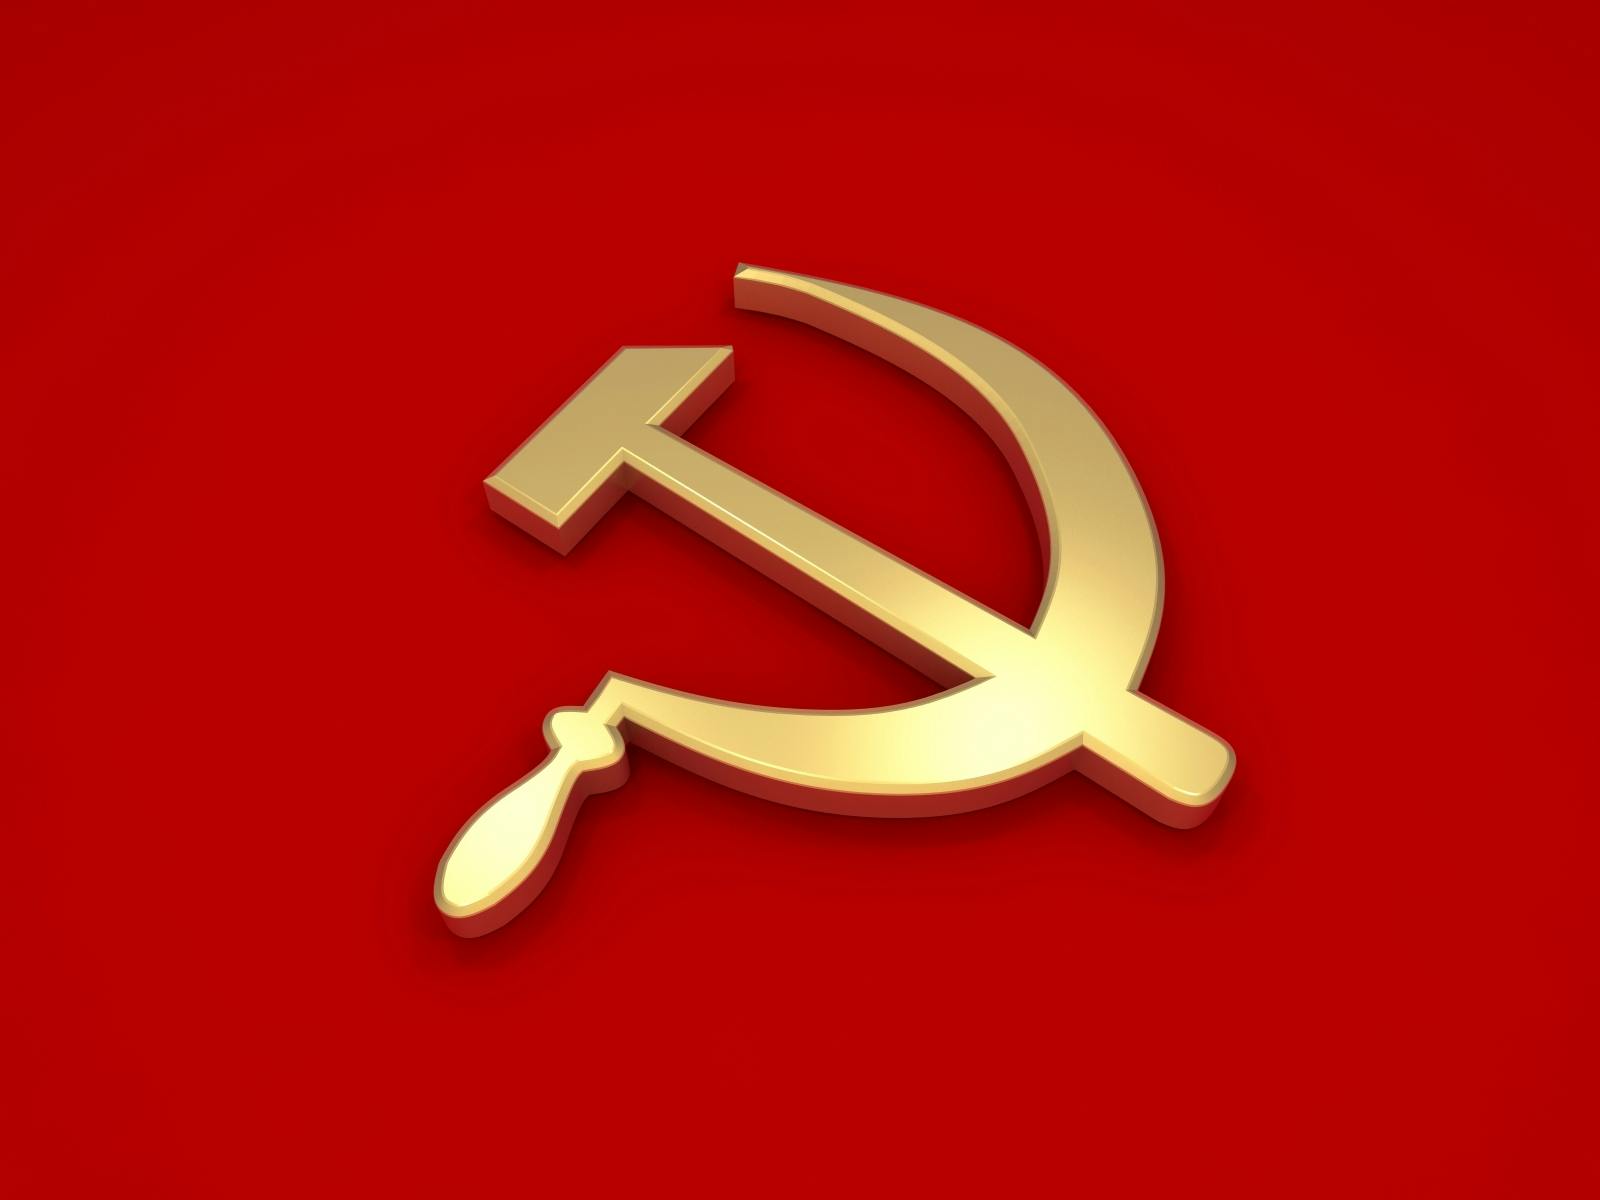 Komünizm Nedir?